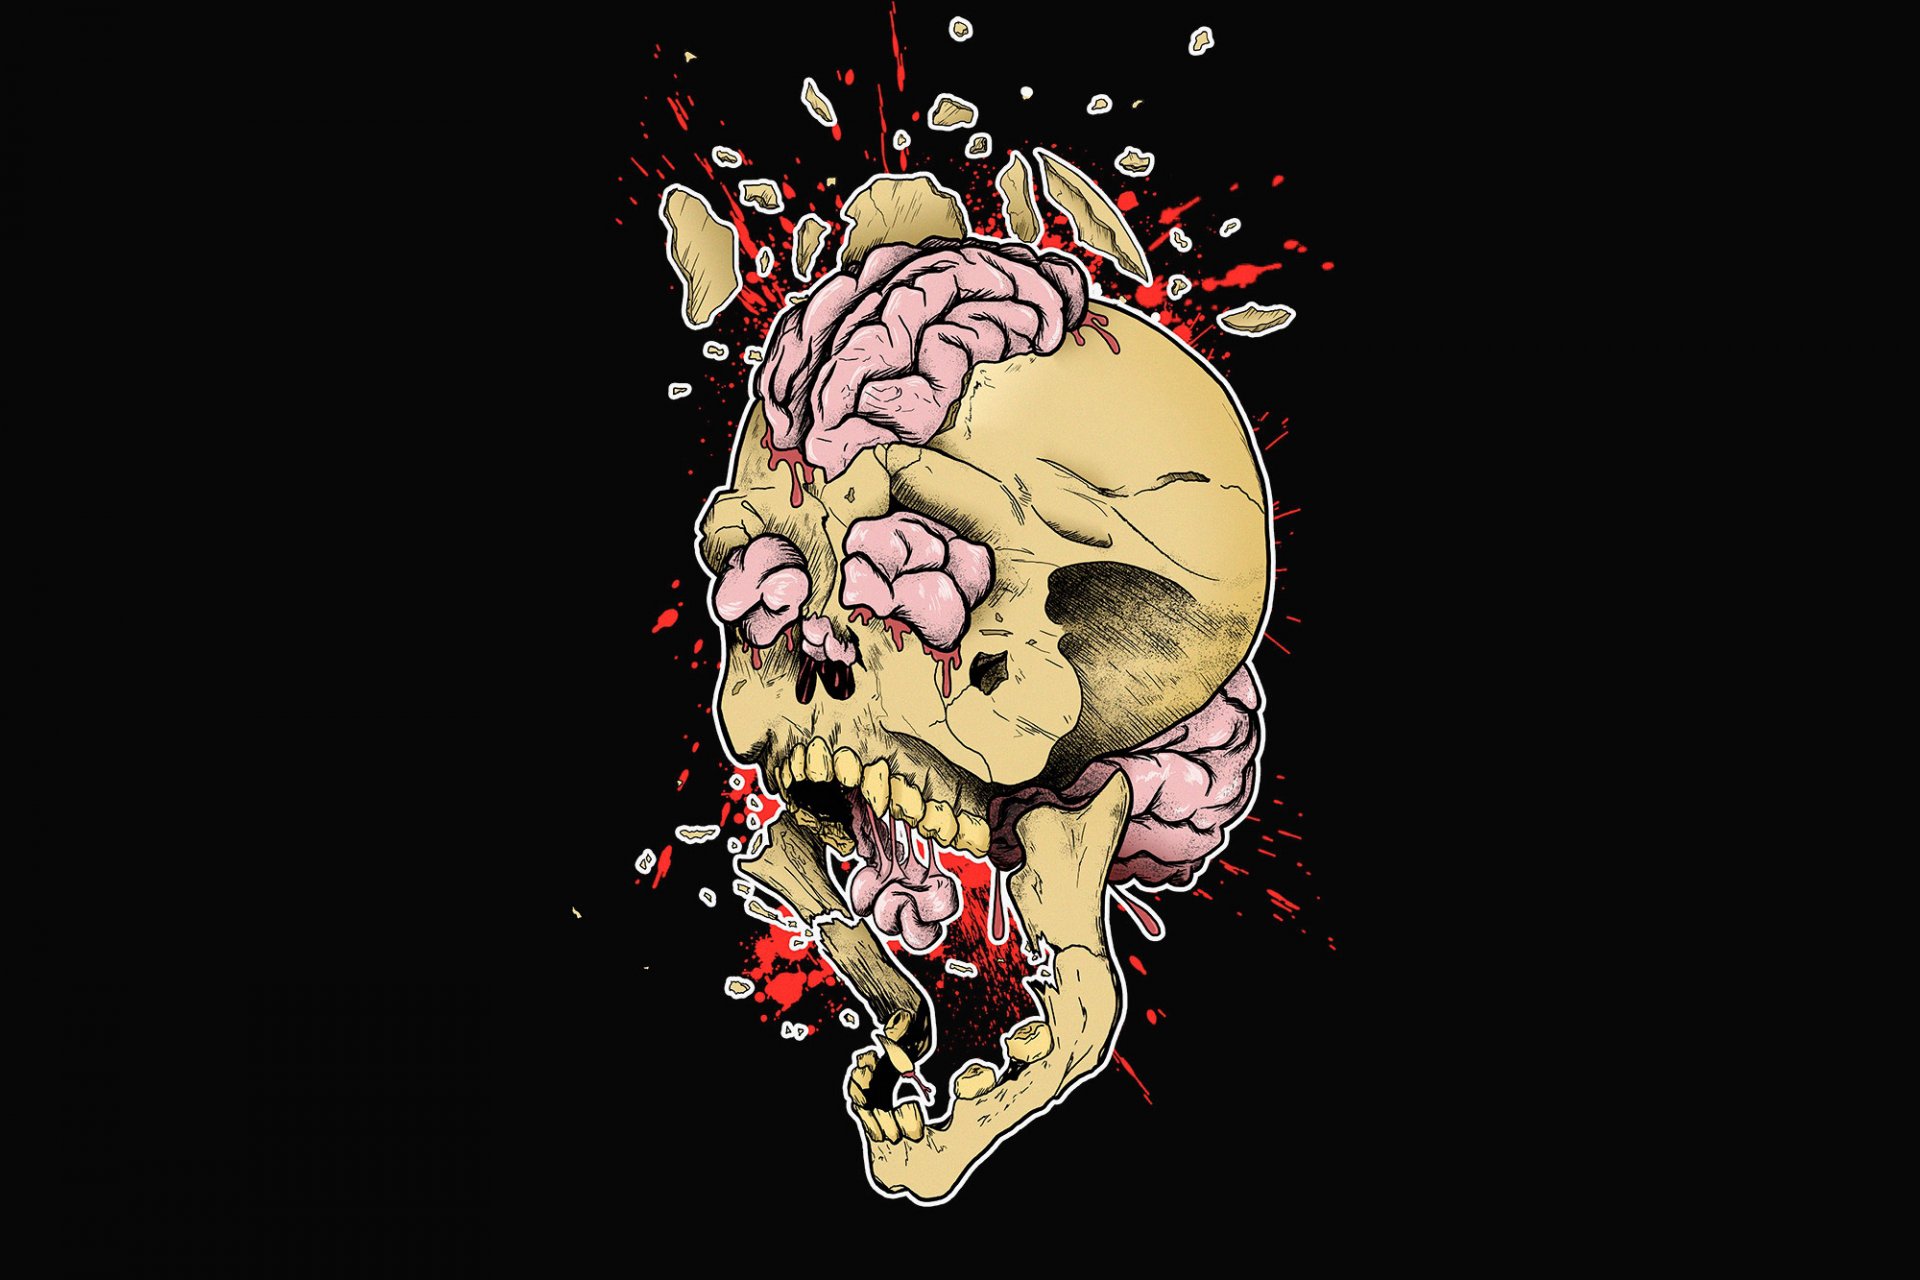 череп мозг разрыв взрыв осколки брызги печати принт рисунок арт креатив черный фон